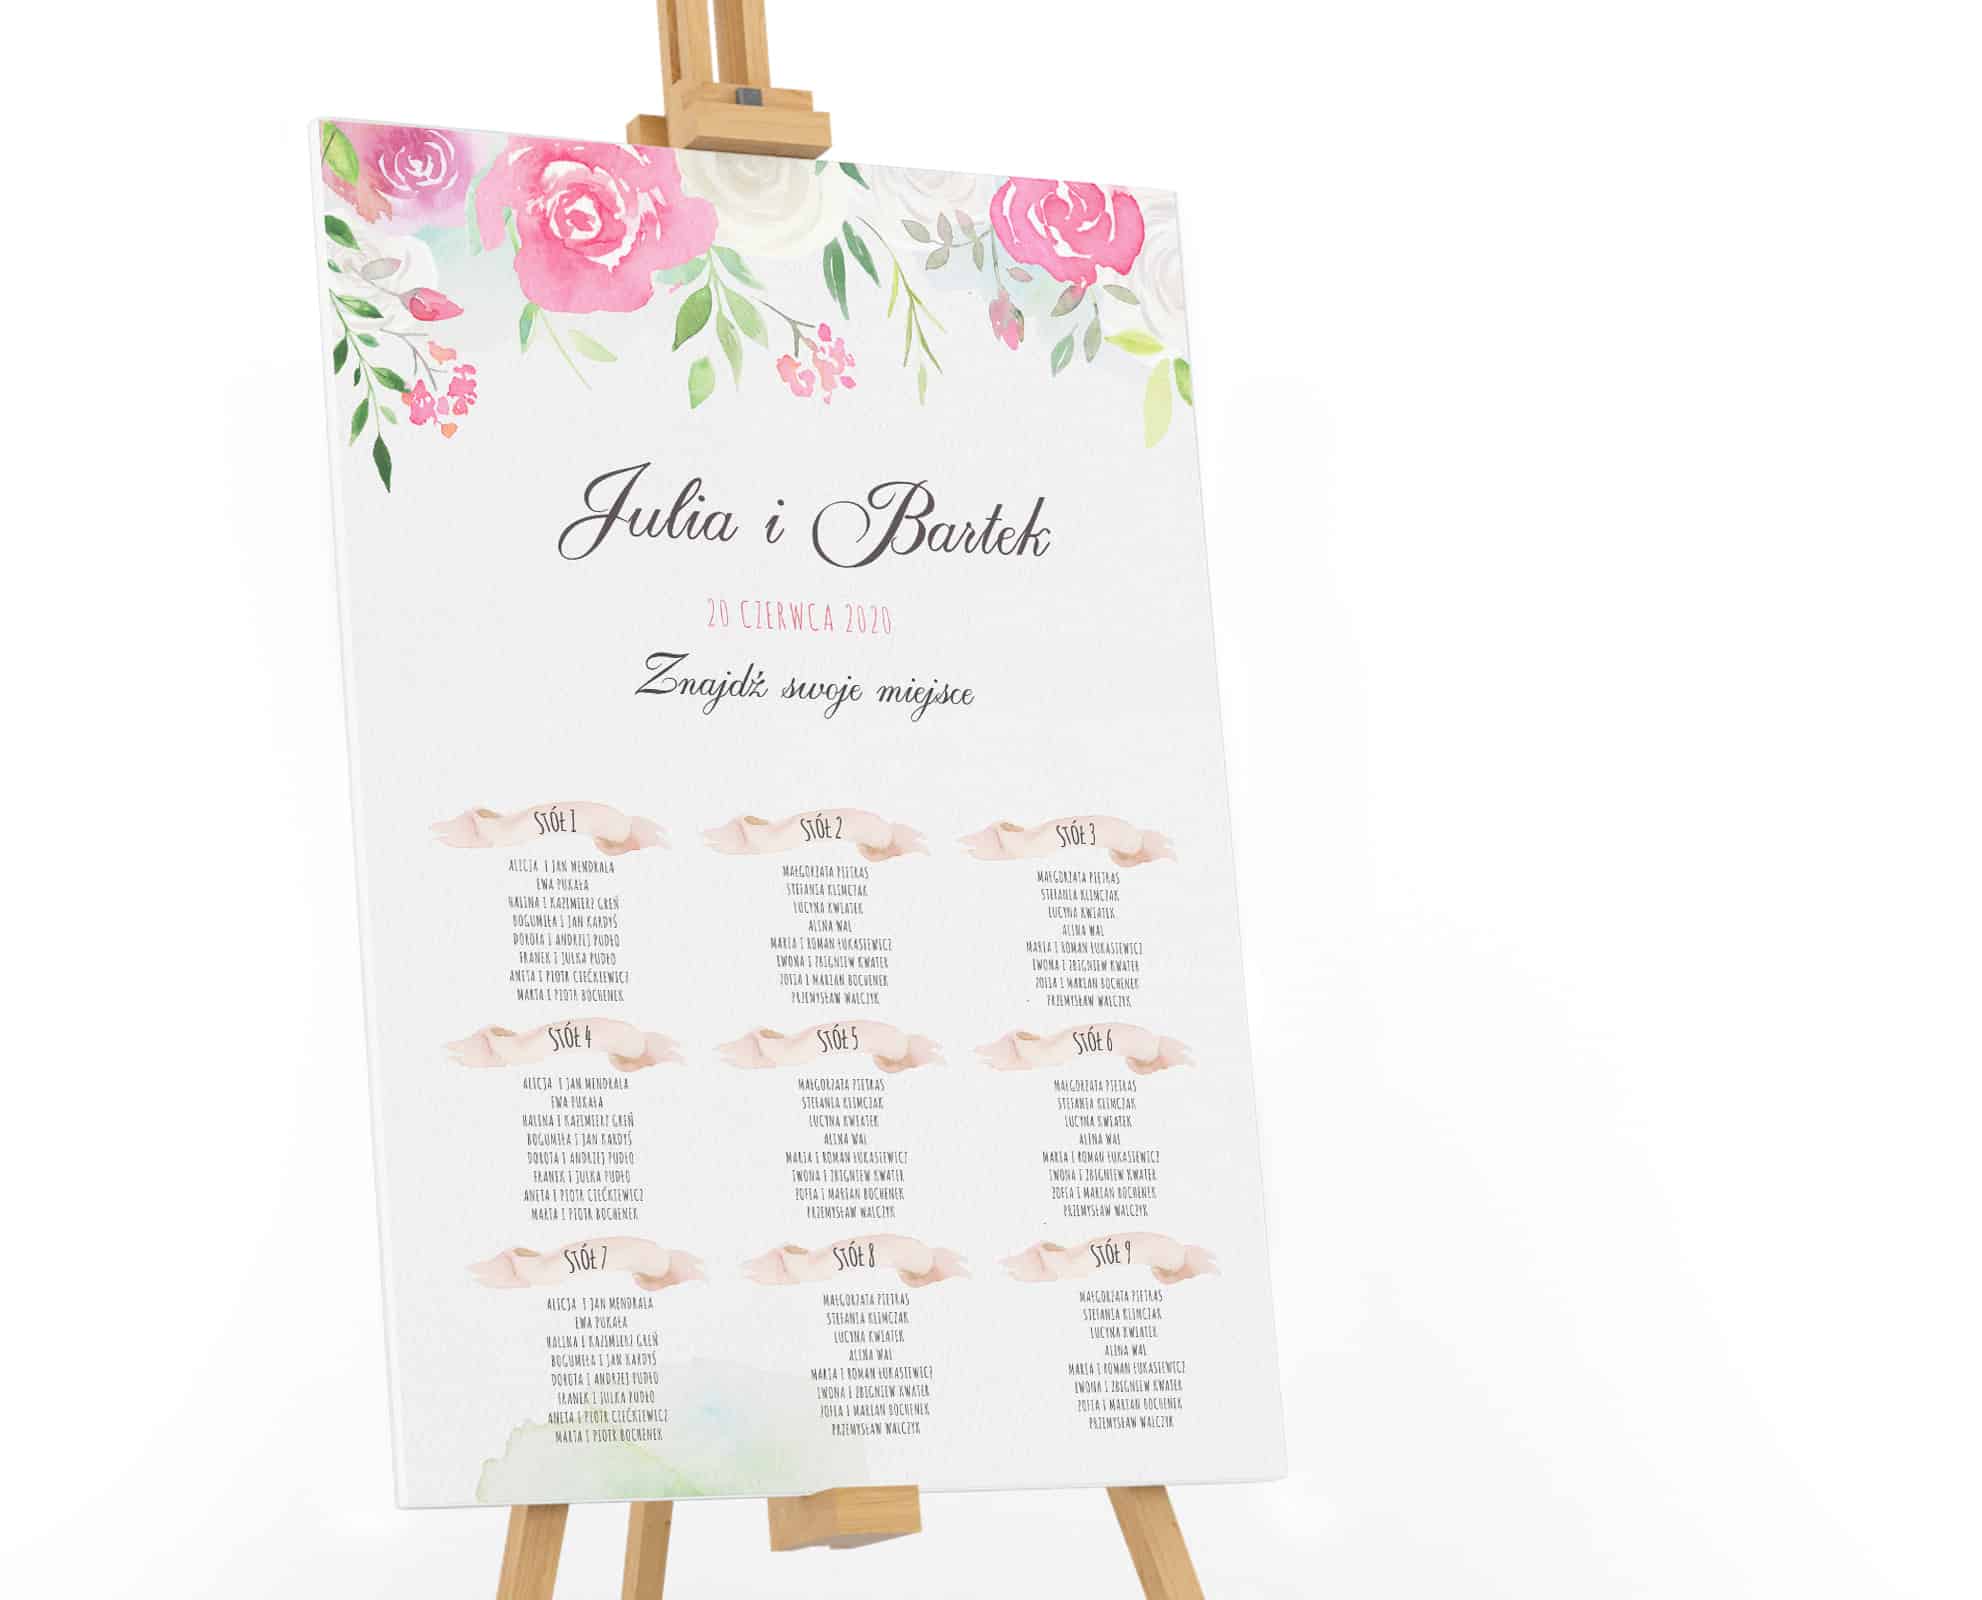 Plan stołów na płótnie z różami w stylu watercolor i delikatnymi listkami